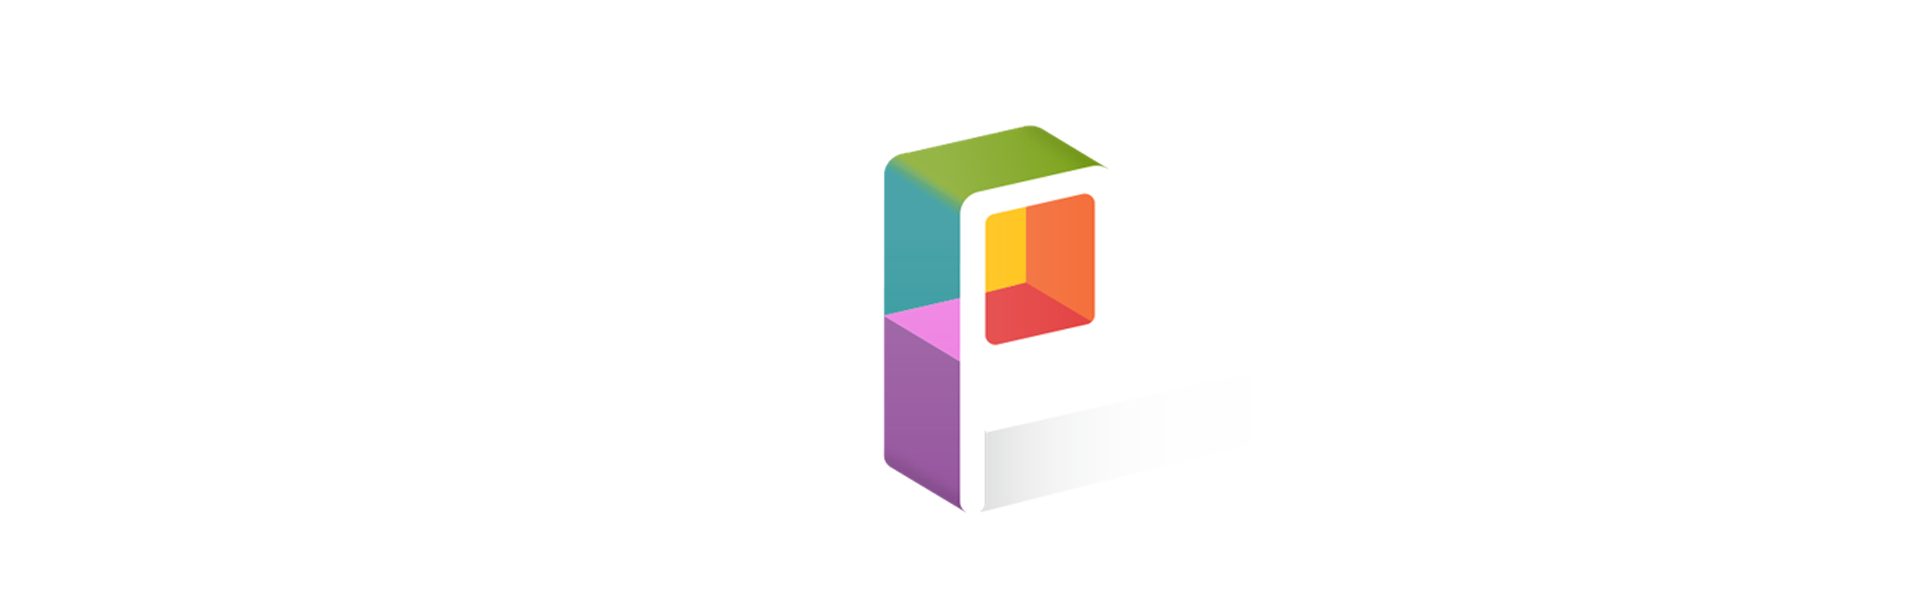 Pixel Plex